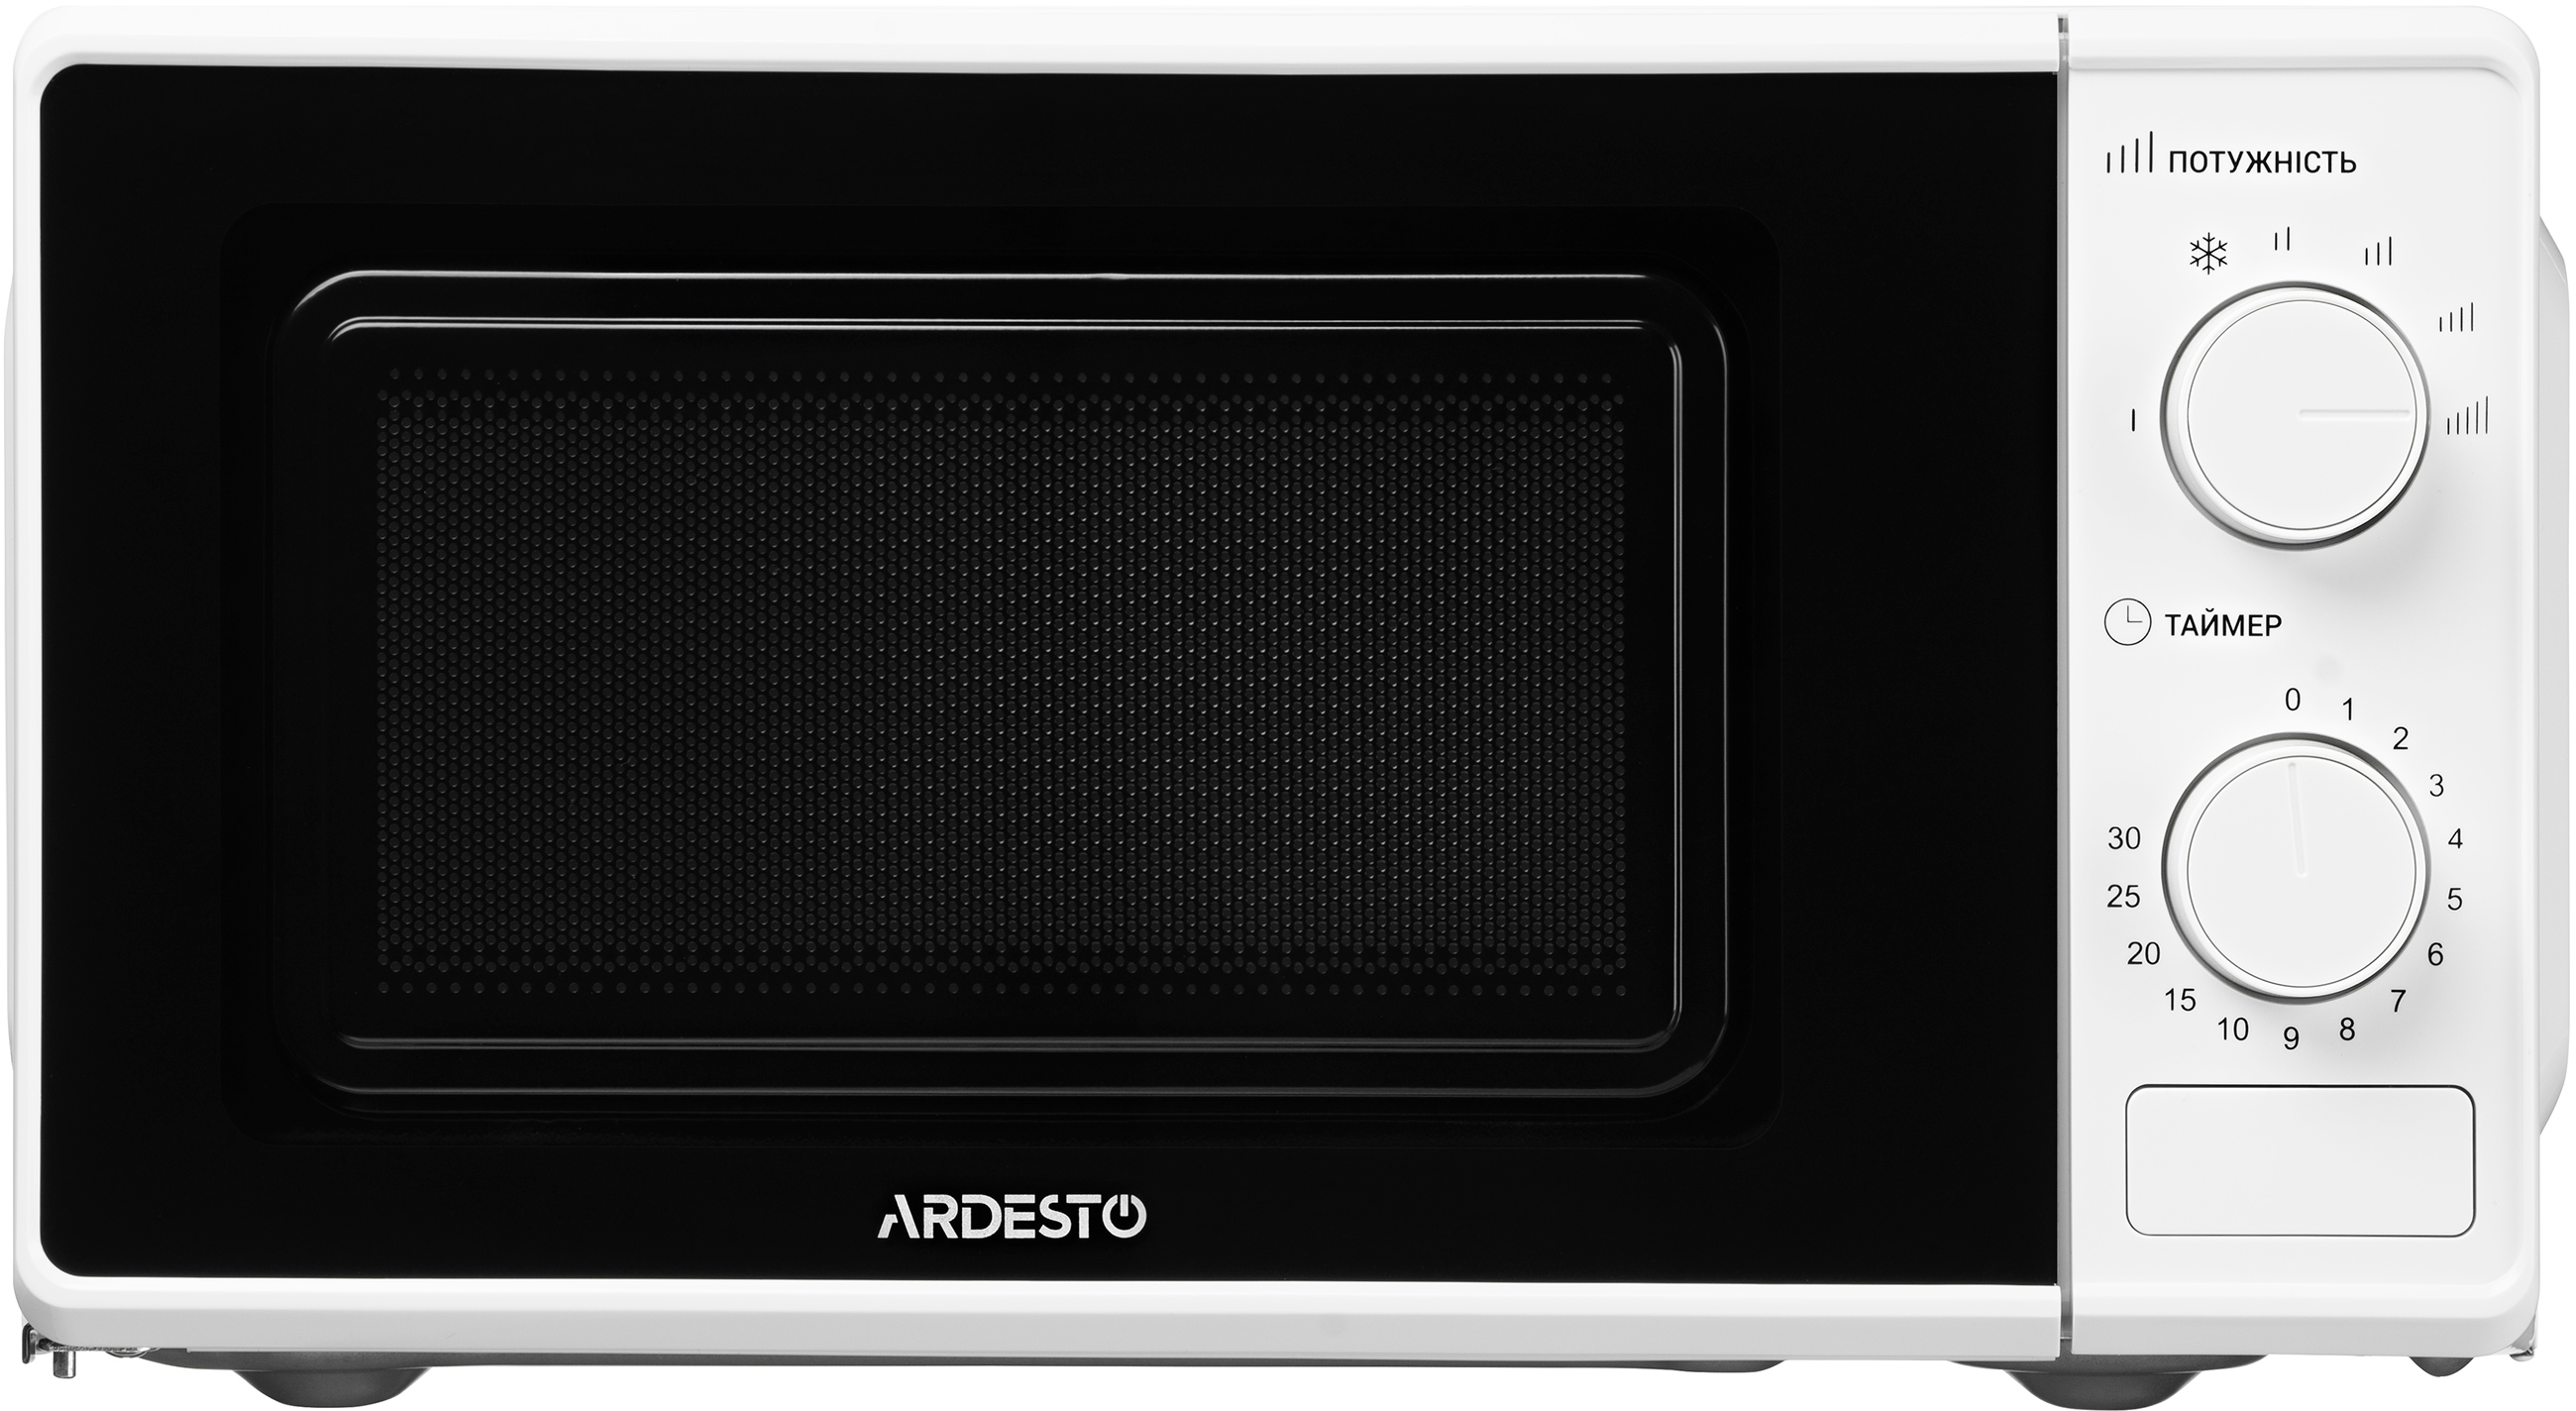 Микроволновая печь Ardesto GO-S724W цена 2173.60 грн - фотография 2